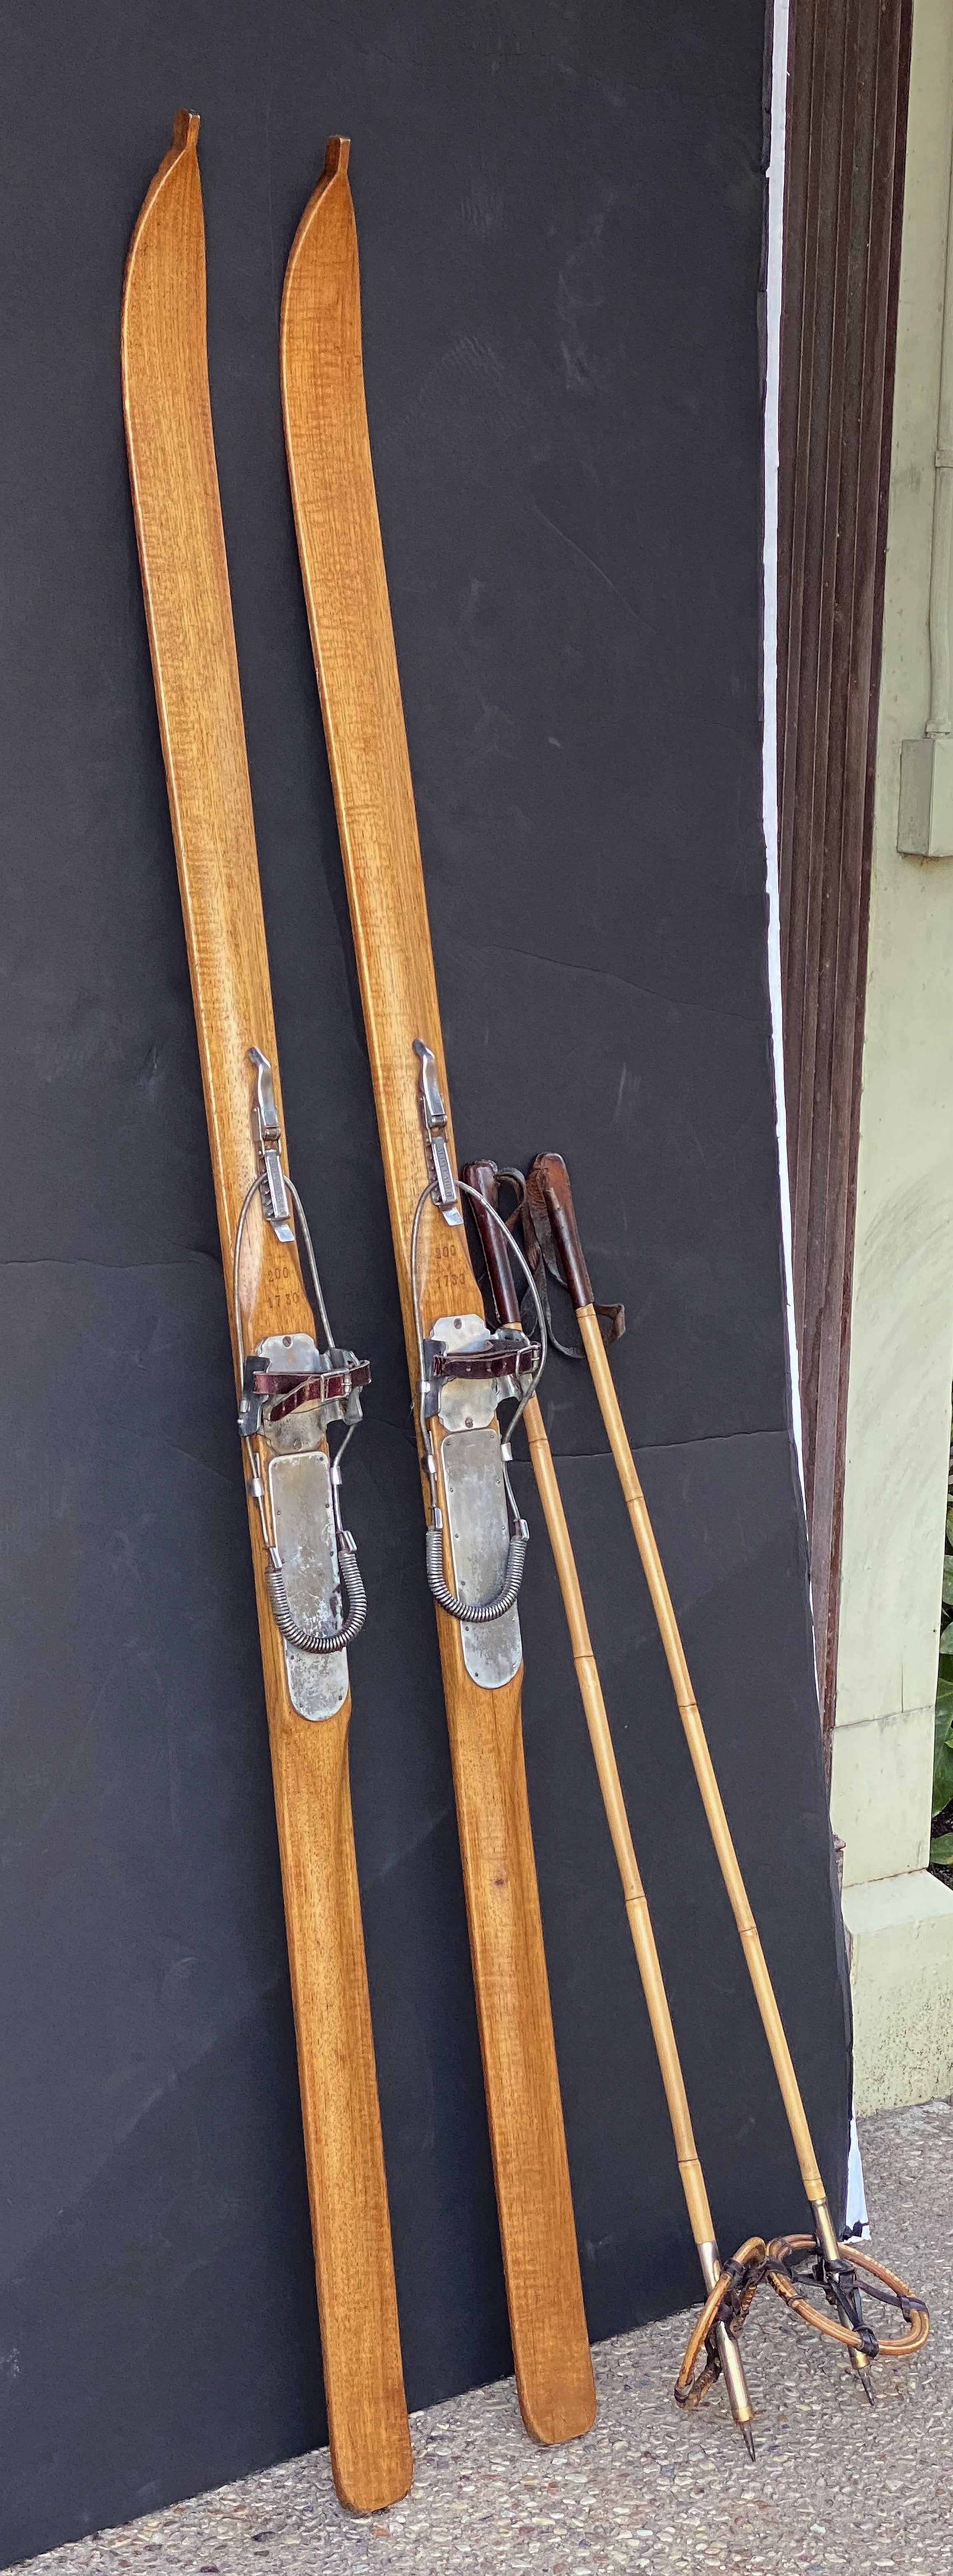 vintage wood skis